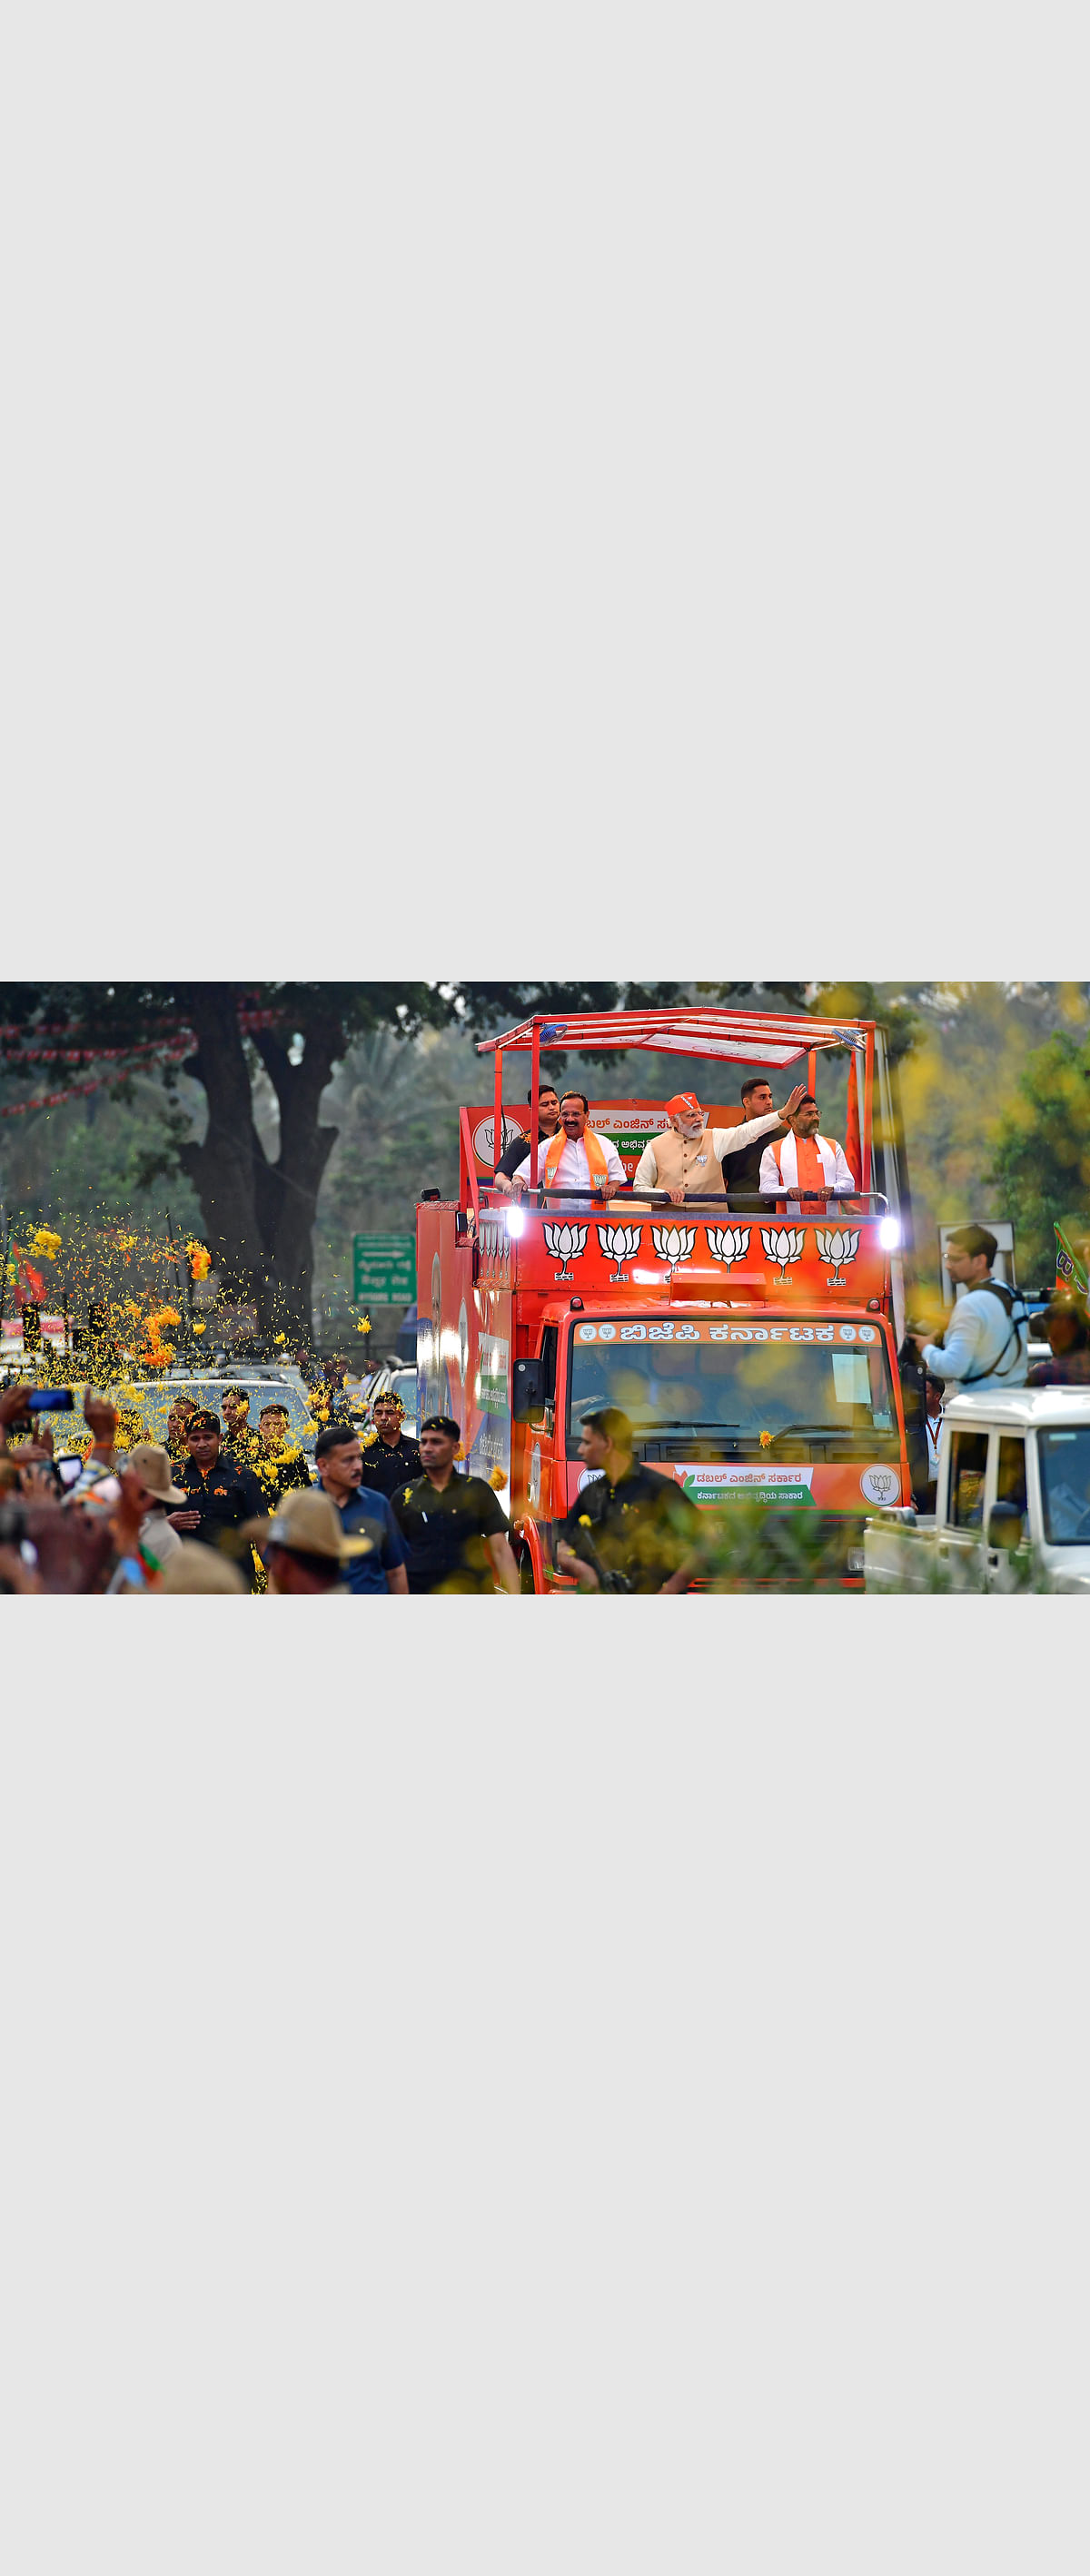 ‘ನೀಟ್’ ದಿನವೇ ರೋಡ್ ಶೋ ಭರಾಟೆ: ವಿದ್ಯಾರ್ಥಿಗಳಿಗೆ ತೊಂದರೆ, ಆತಂಕ